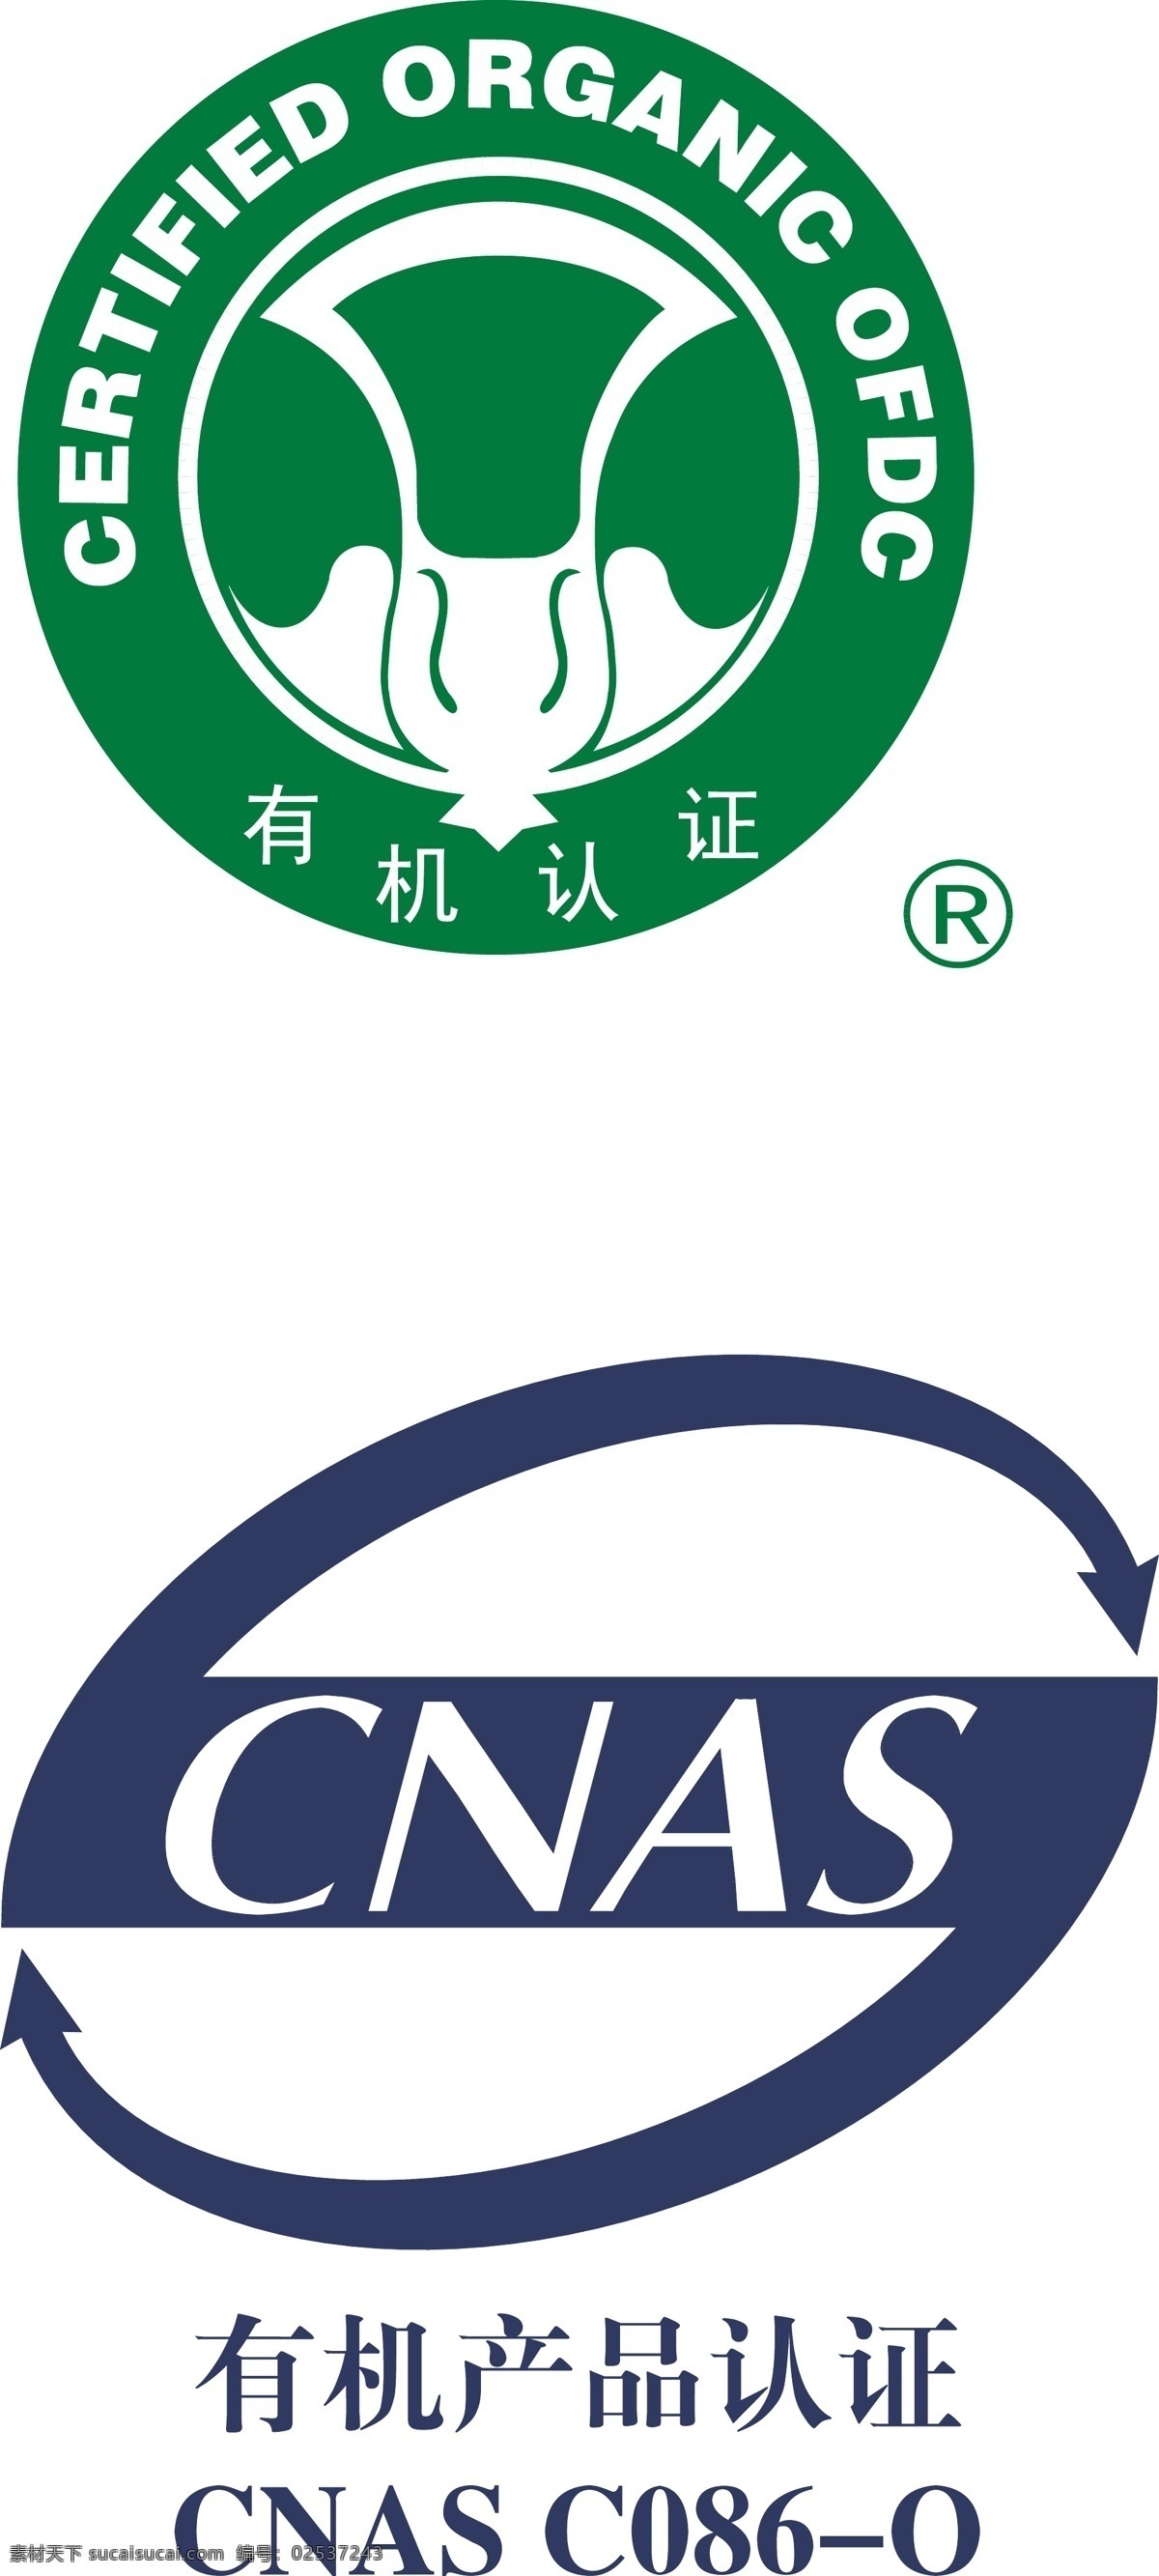 有机食品 有机认证 有机产品认证 图标 标志 广告素材 logo设计